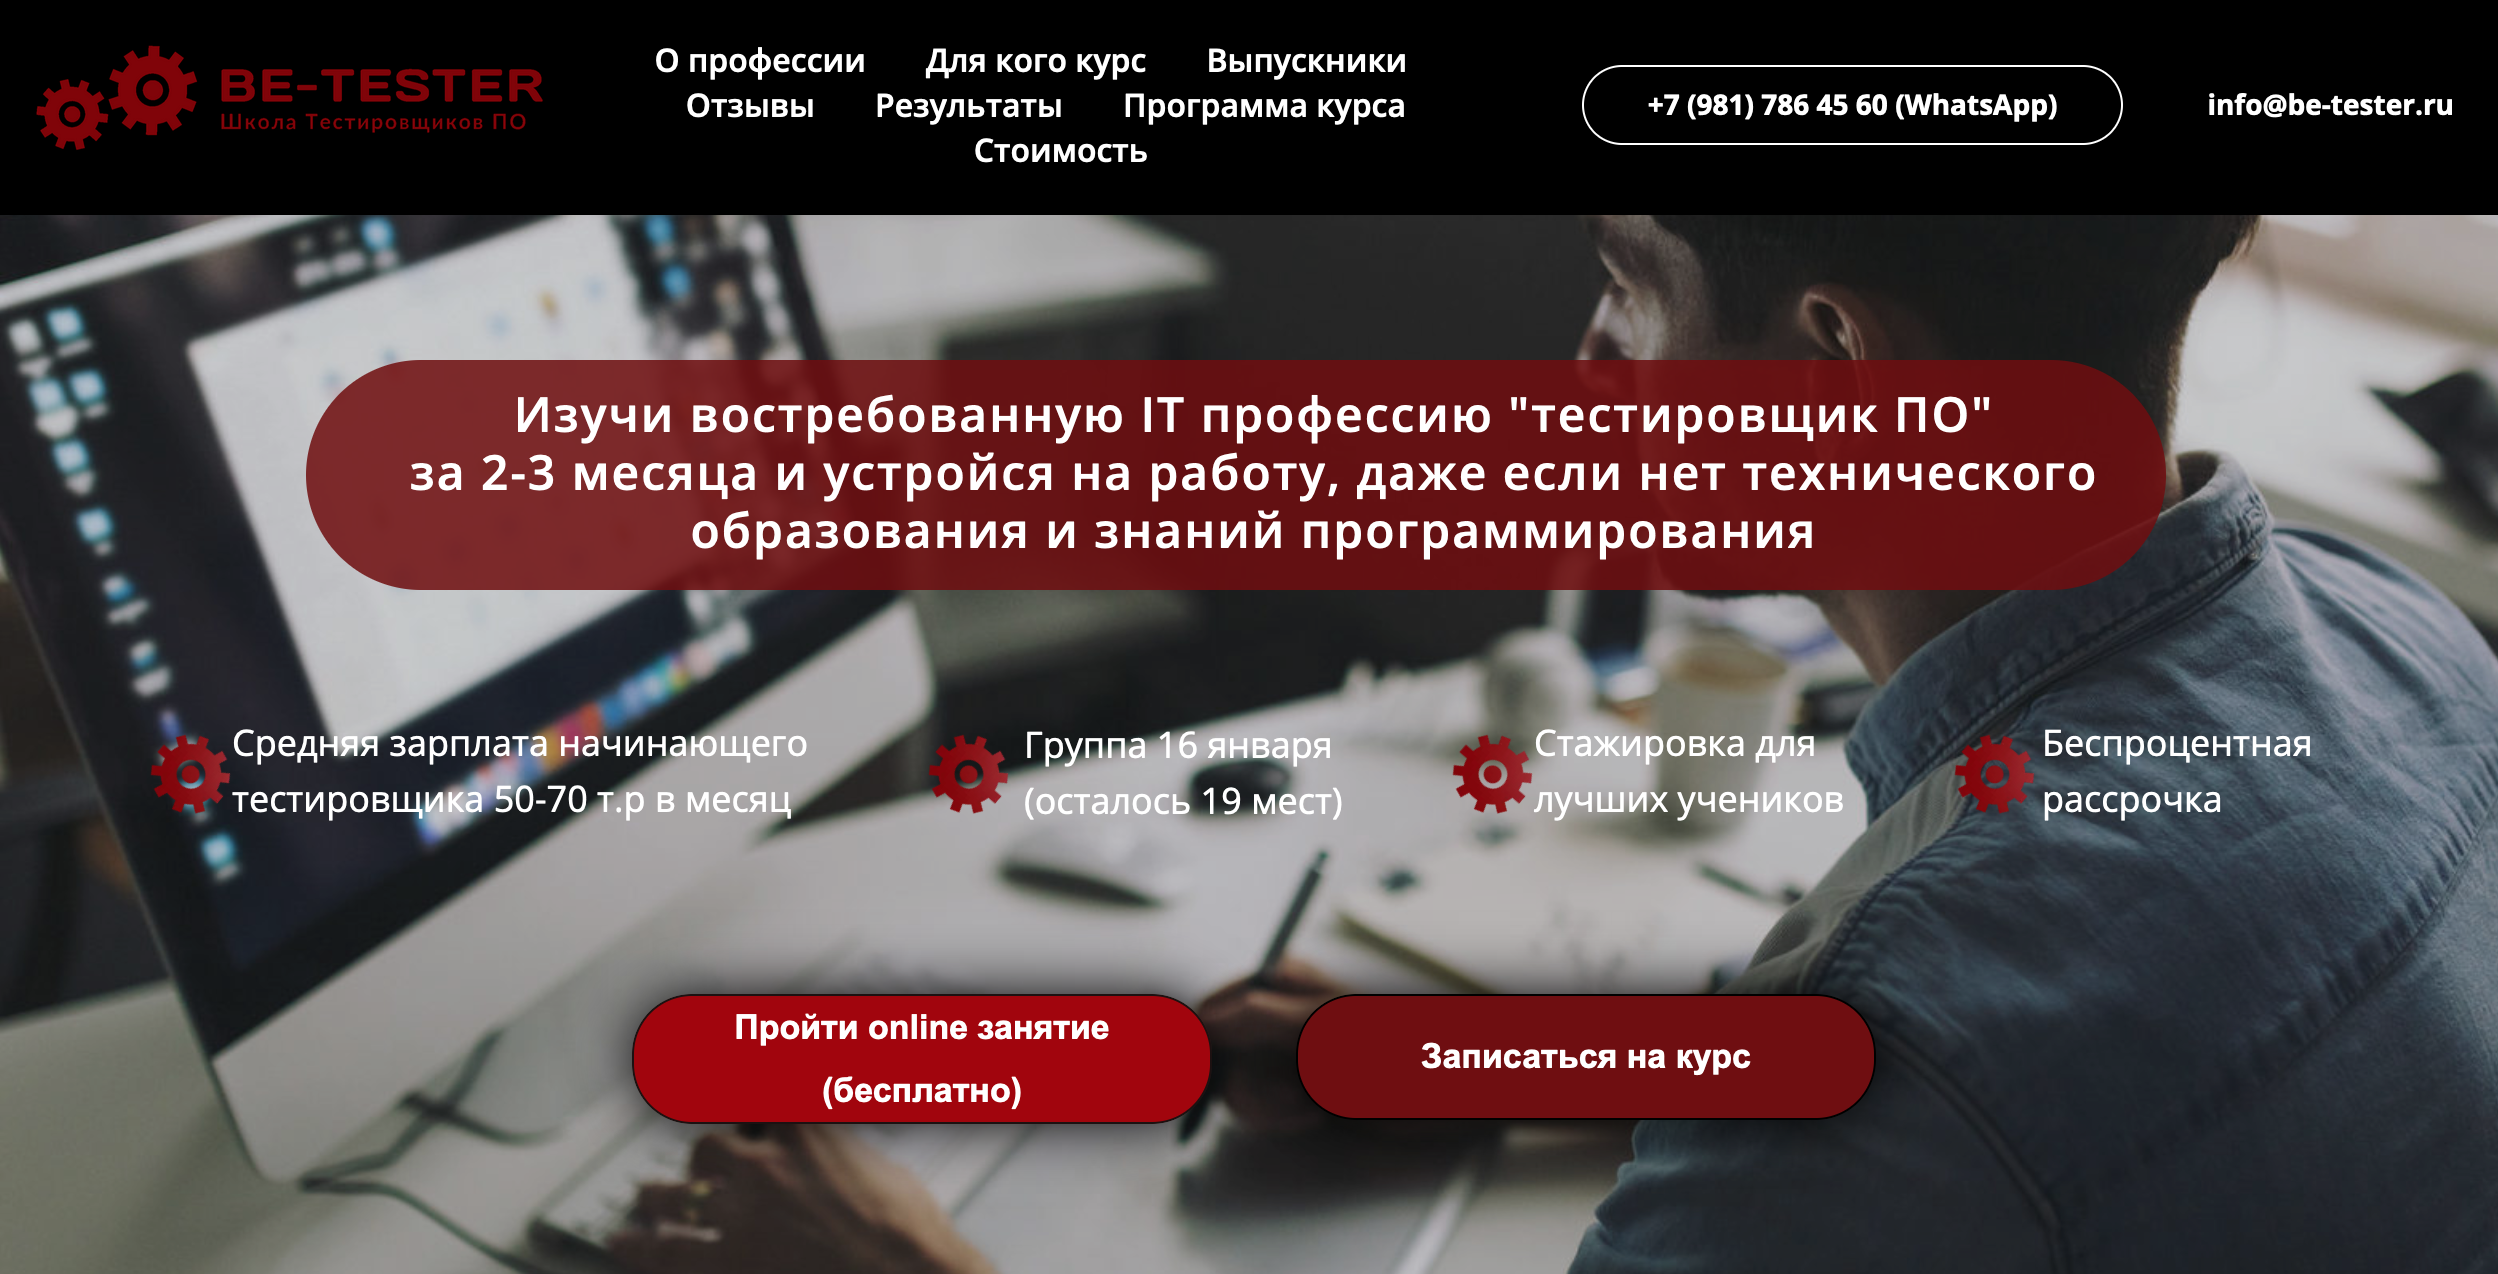 Сайт онлайн⁠-⁠курсов продает сложную услугу — обучение. Поэтому предлагает бесплатный урок, чтобы ученики попробовали. Источник: be-tester.ru